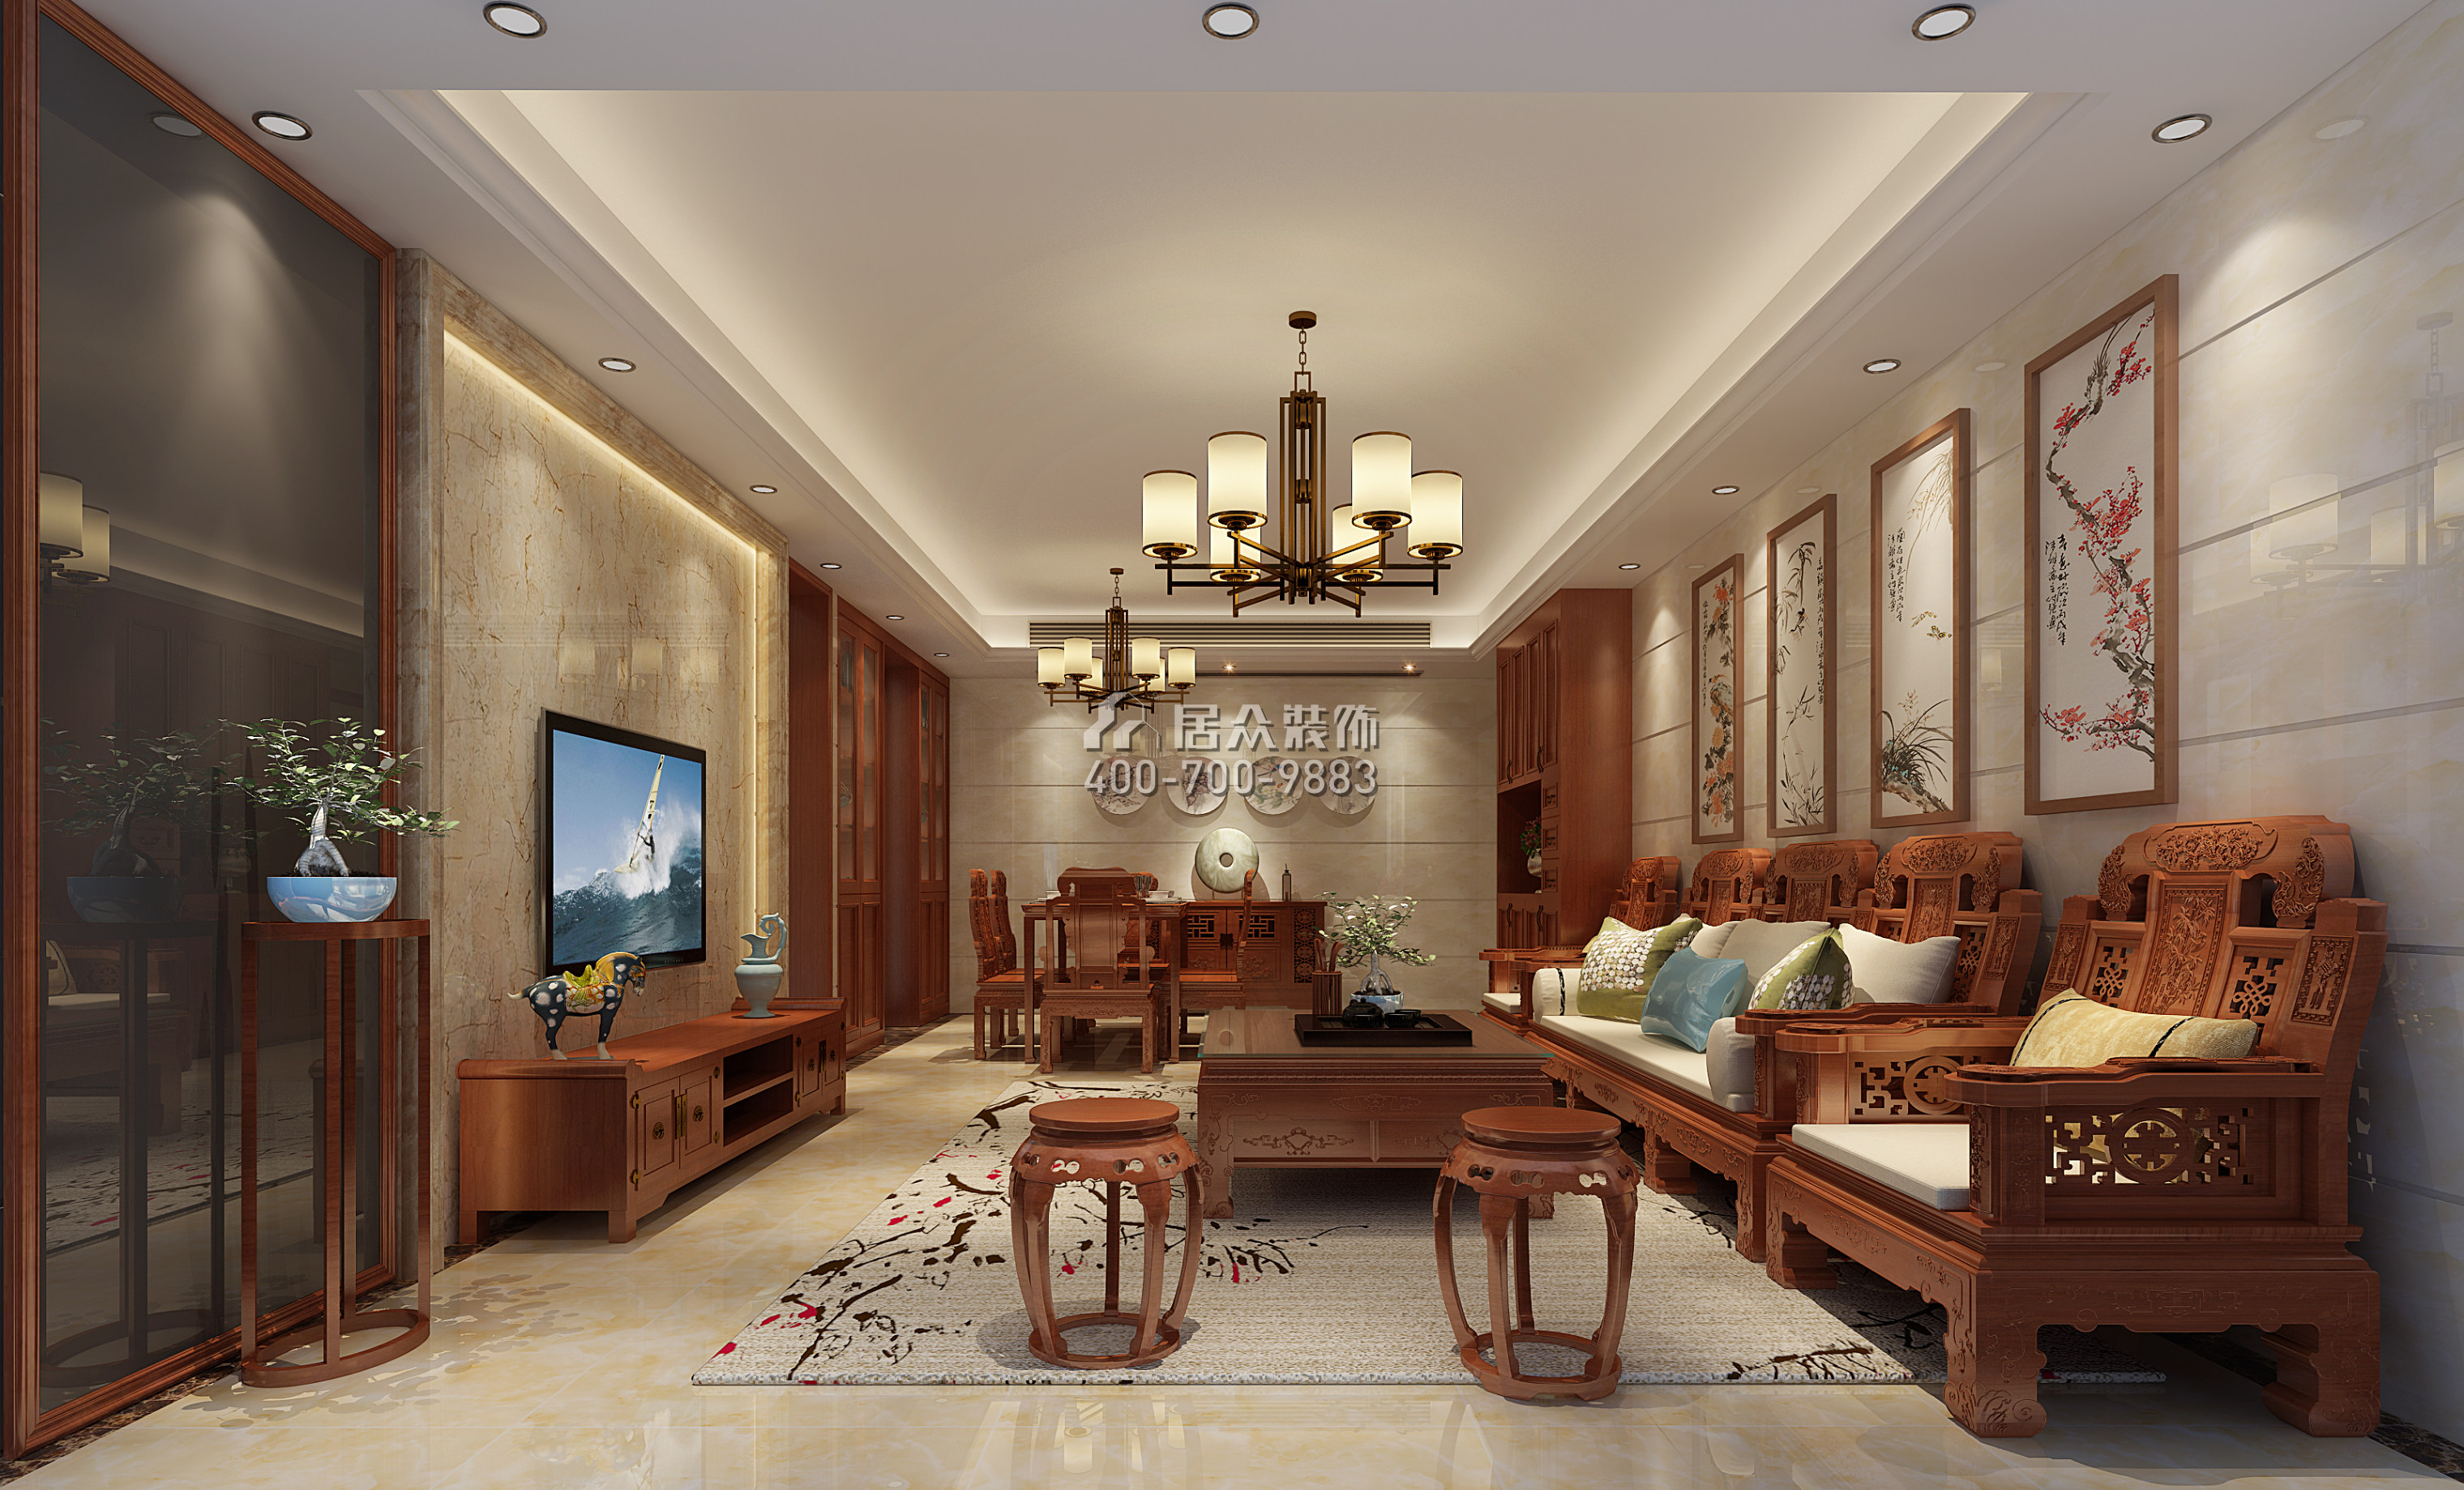 星海名城二期109平方米混搭风格平层户型客厅装修效果图